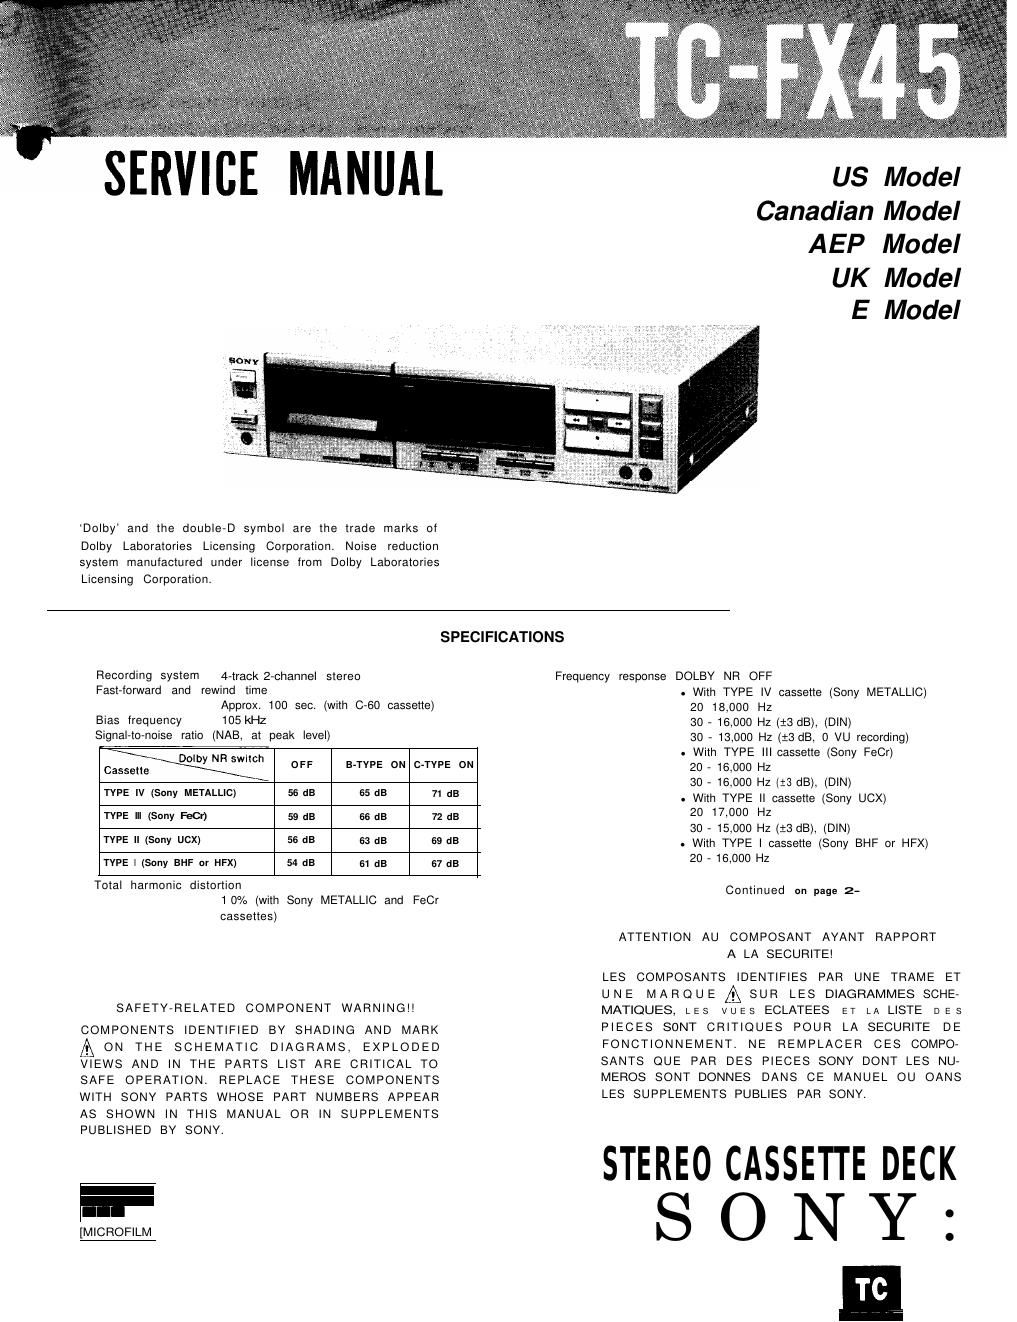 sony tc fx 45 service manual